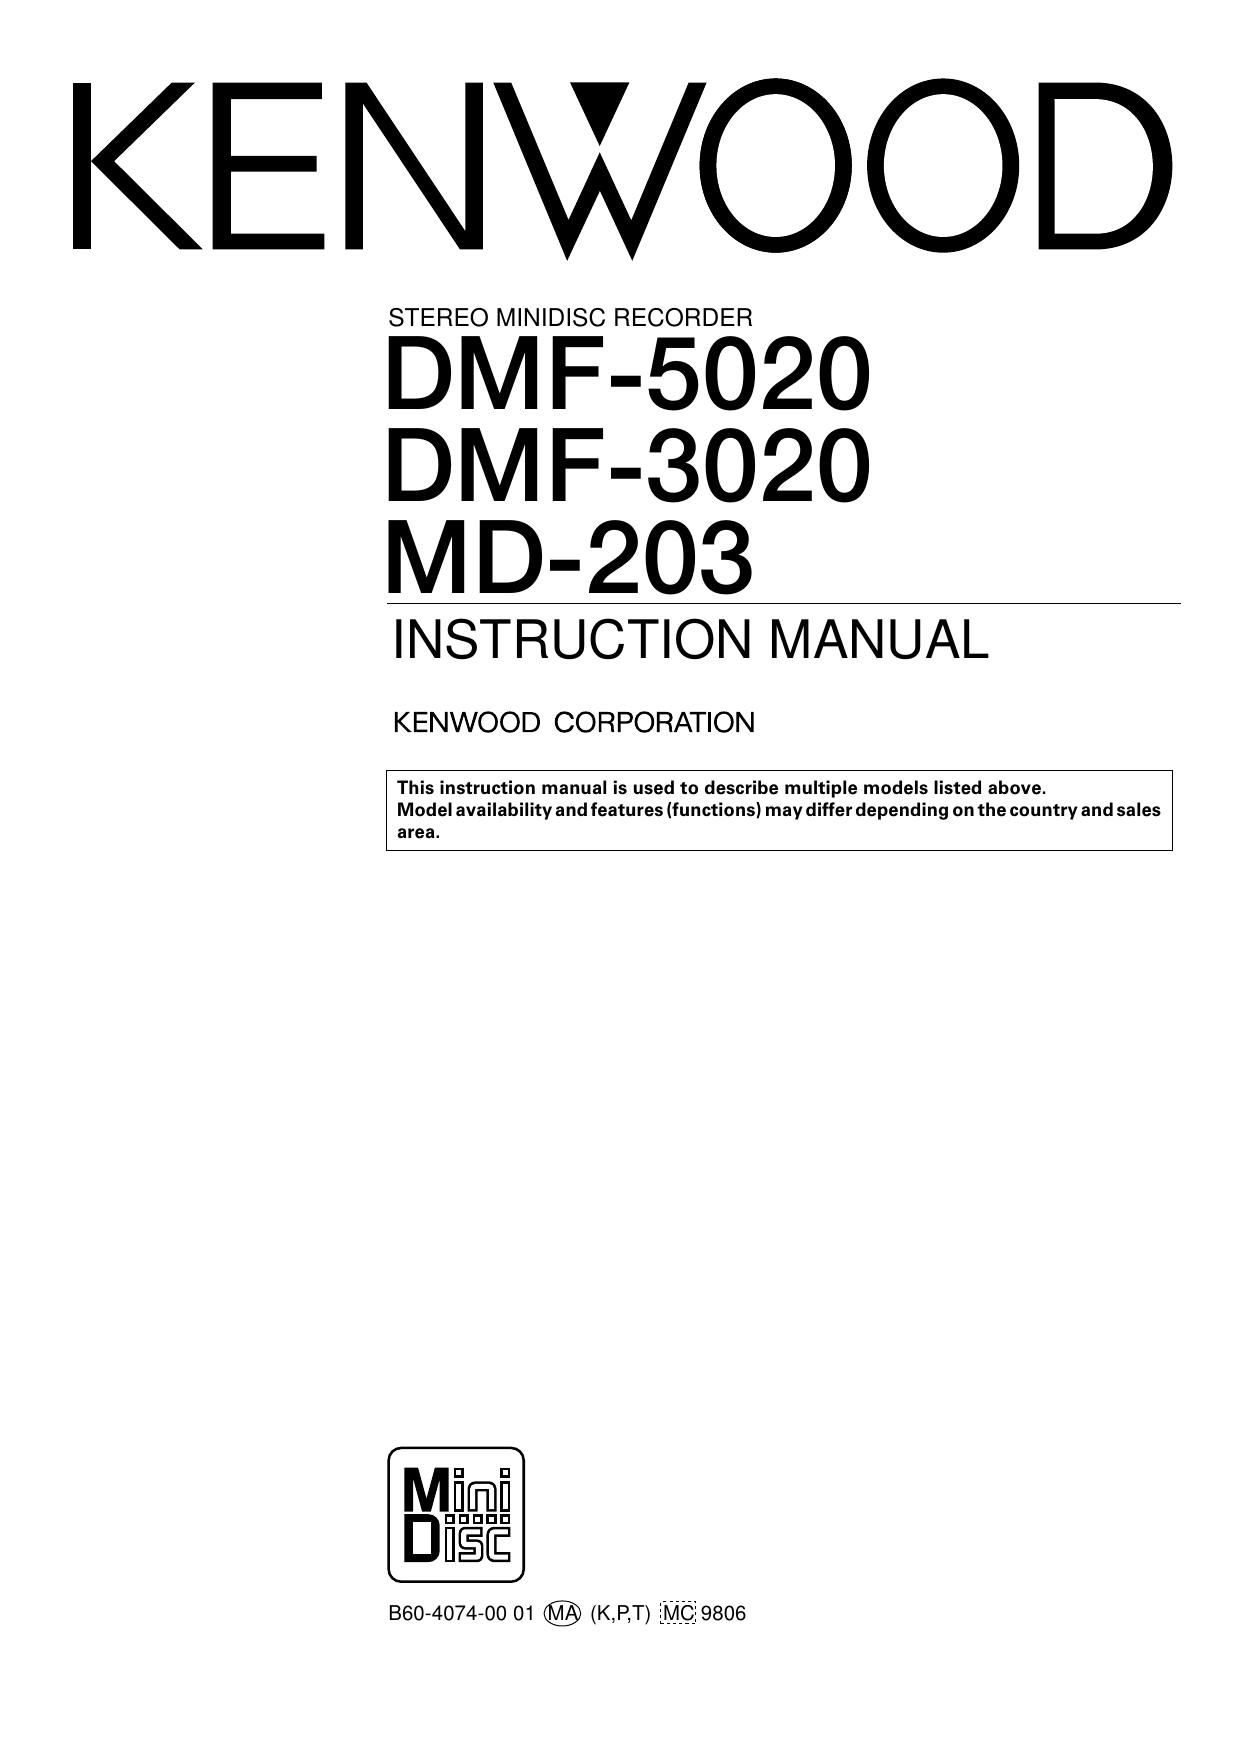 Kenwood DMF 5020 Owners Manual